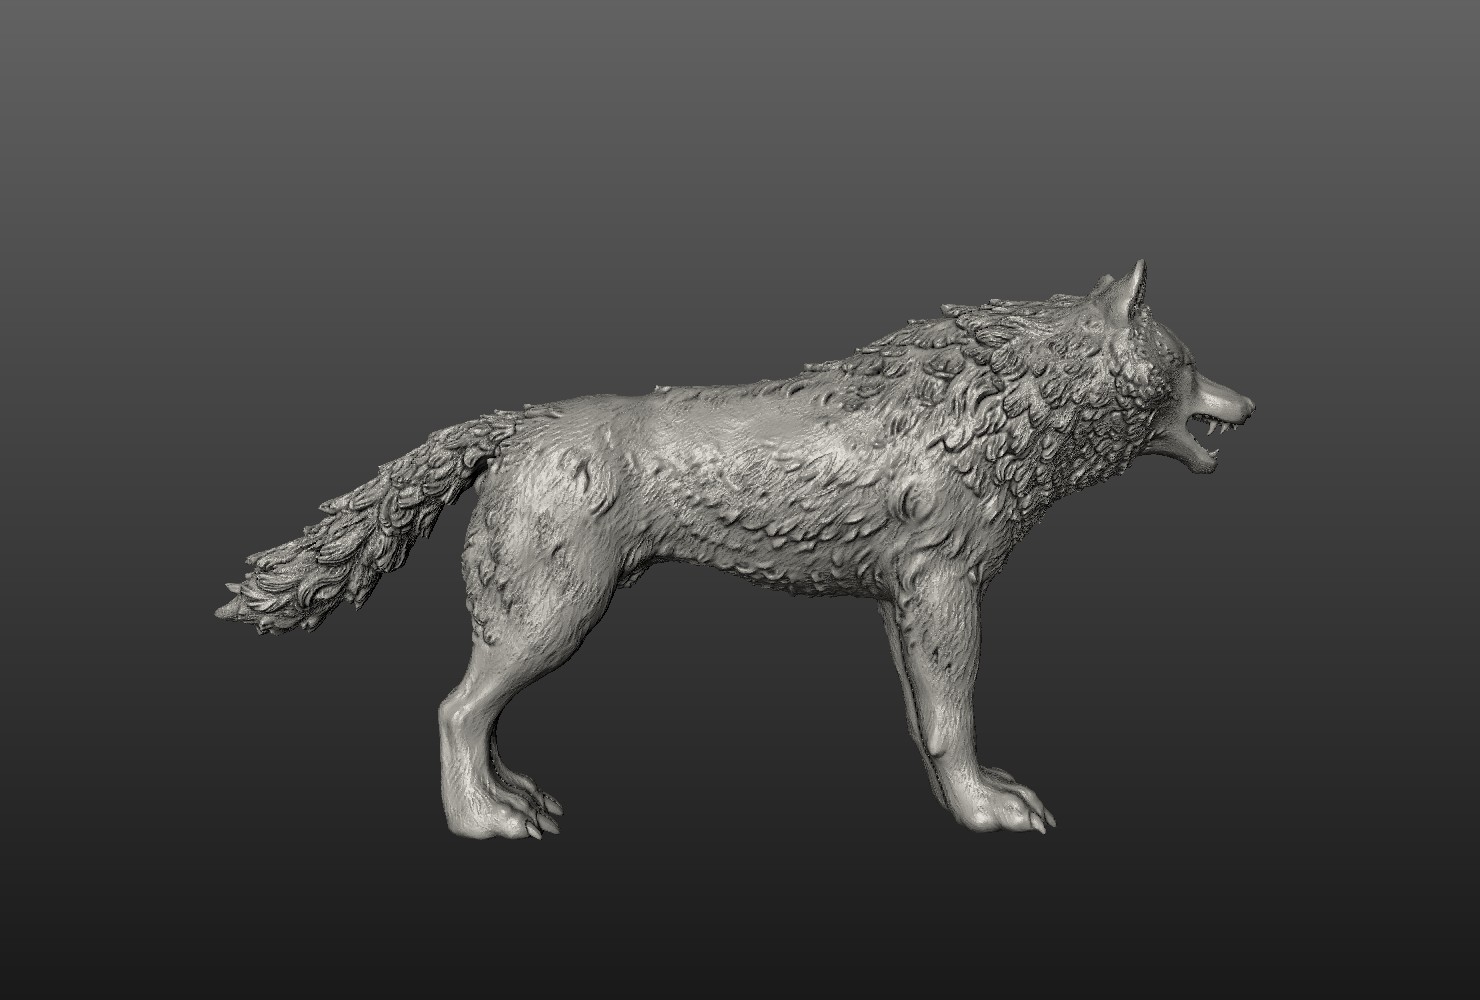 Wolf models. Волк 3д модель. Вороной 3d модель волка. Макет волка. 3д модель кубического волка.